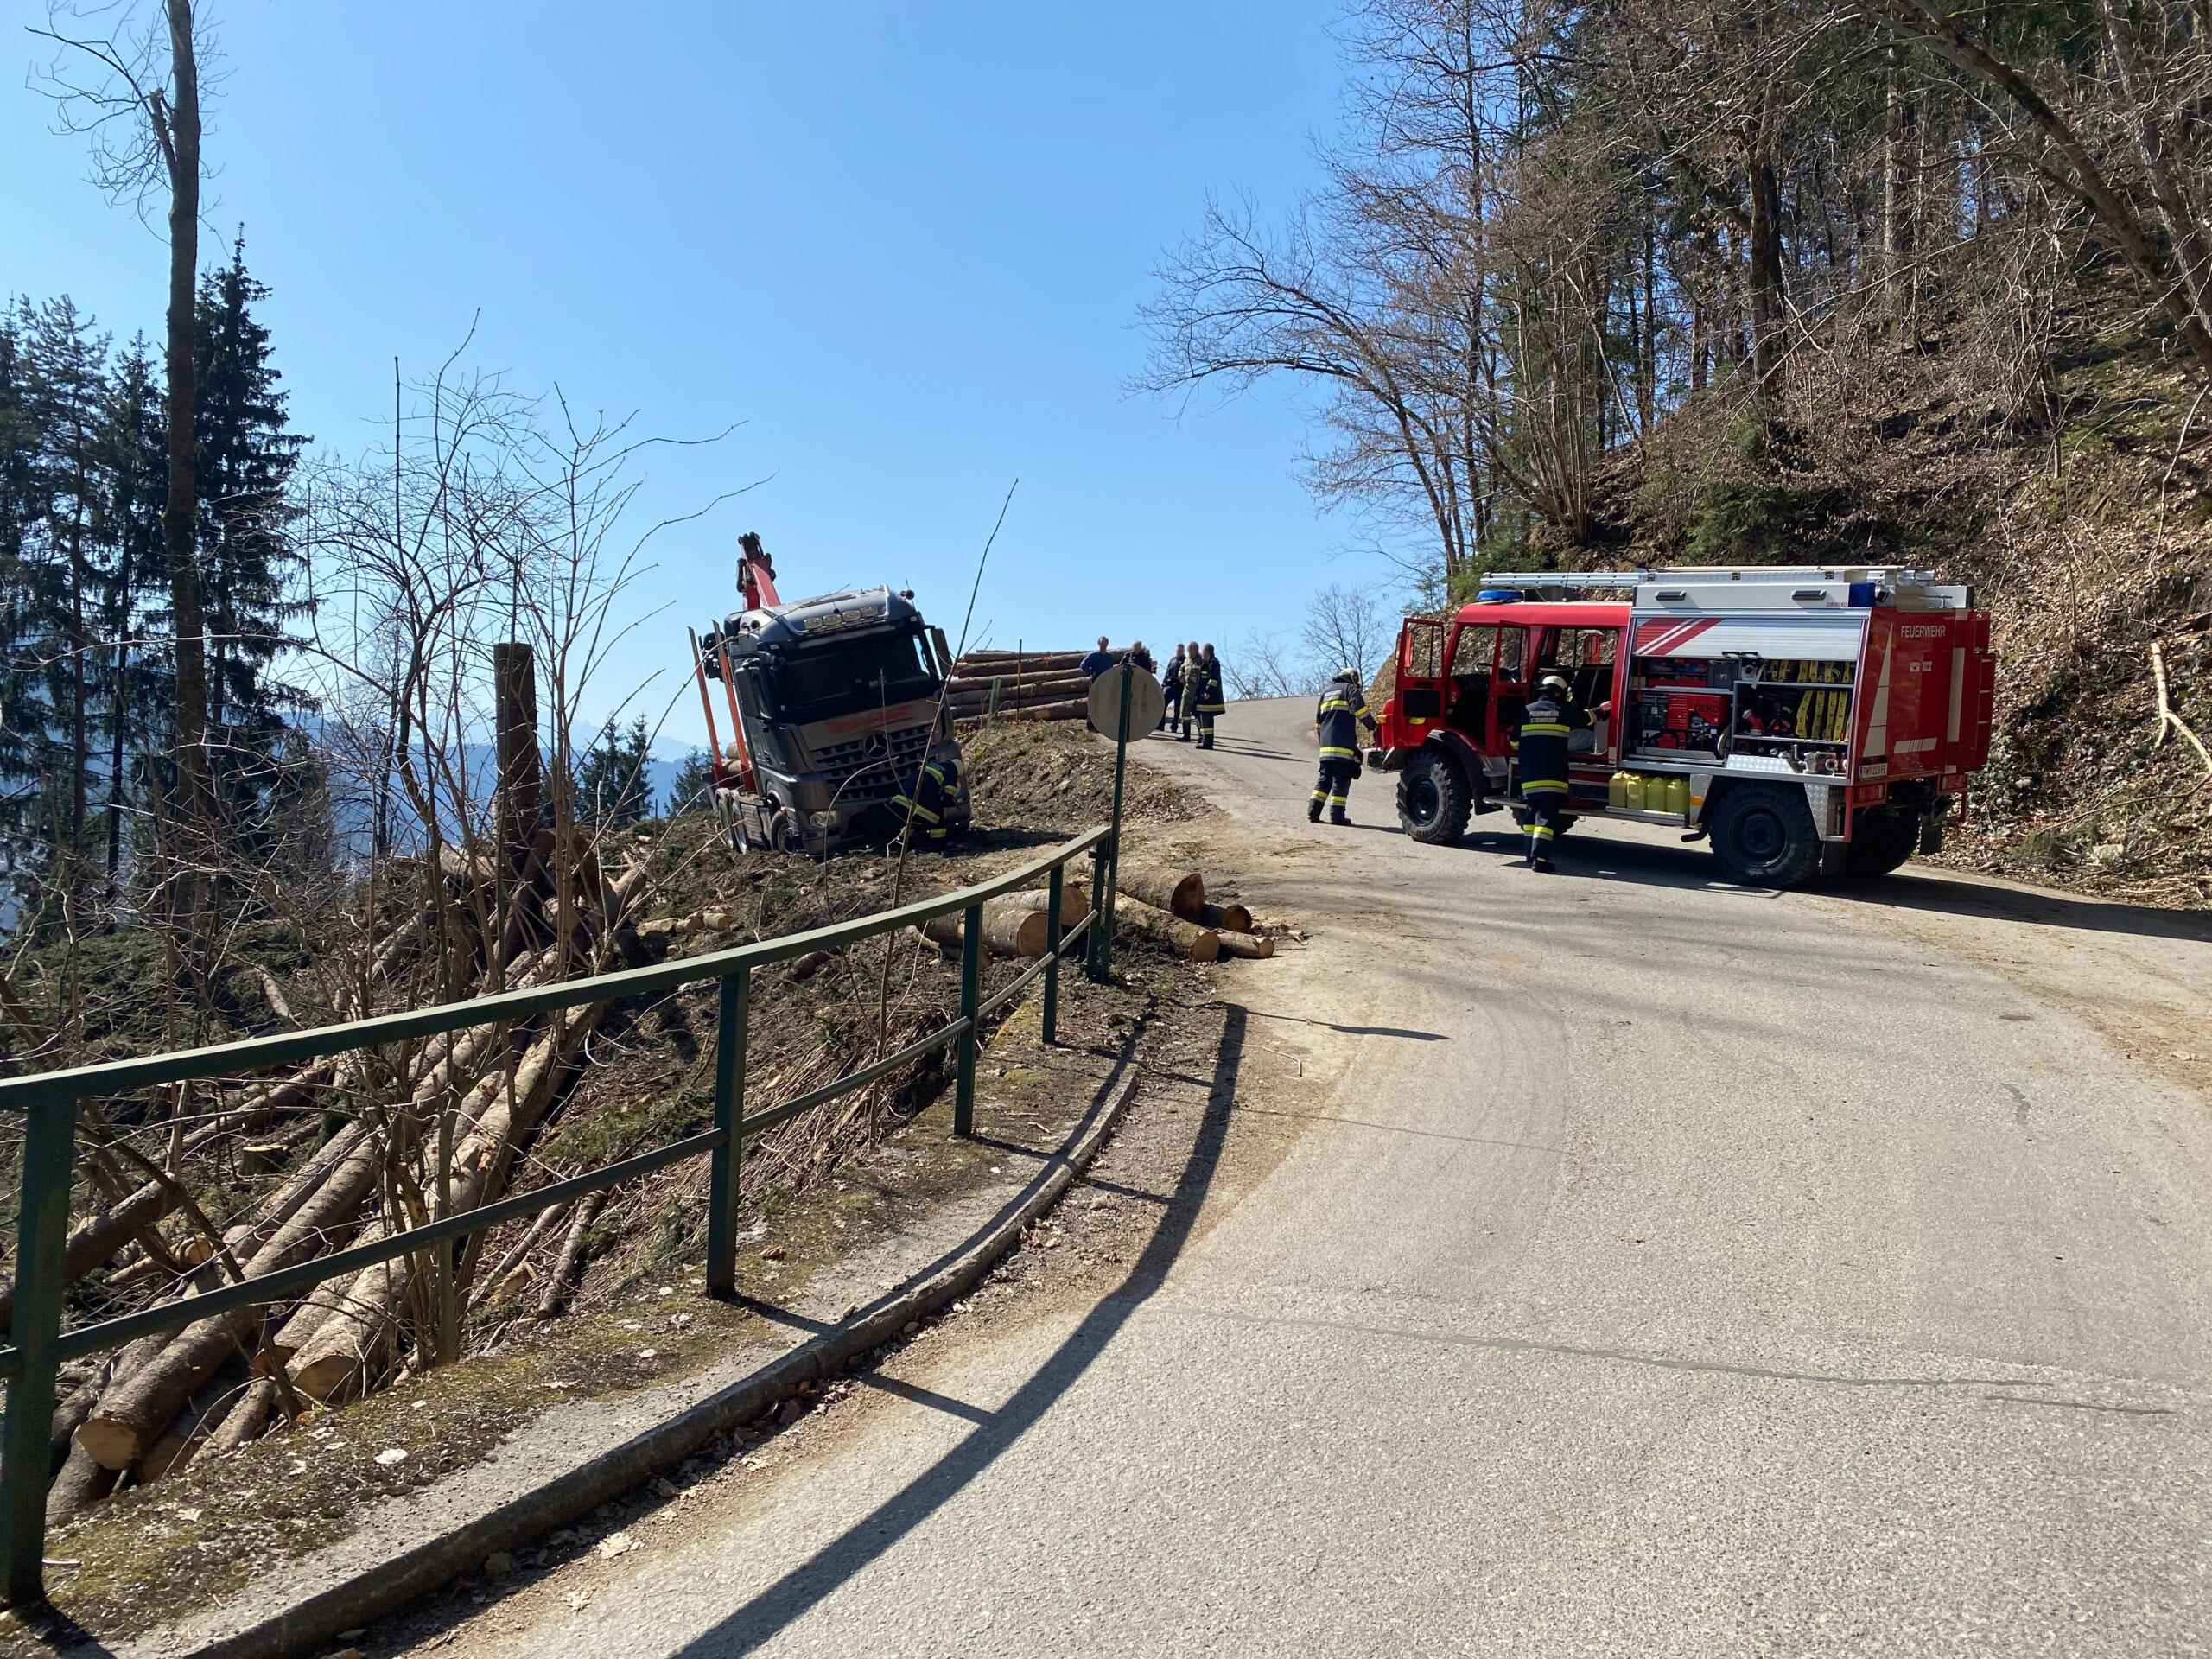 LKW von Feuerwehr vor Absturz bewahrt | Ossiacher See News